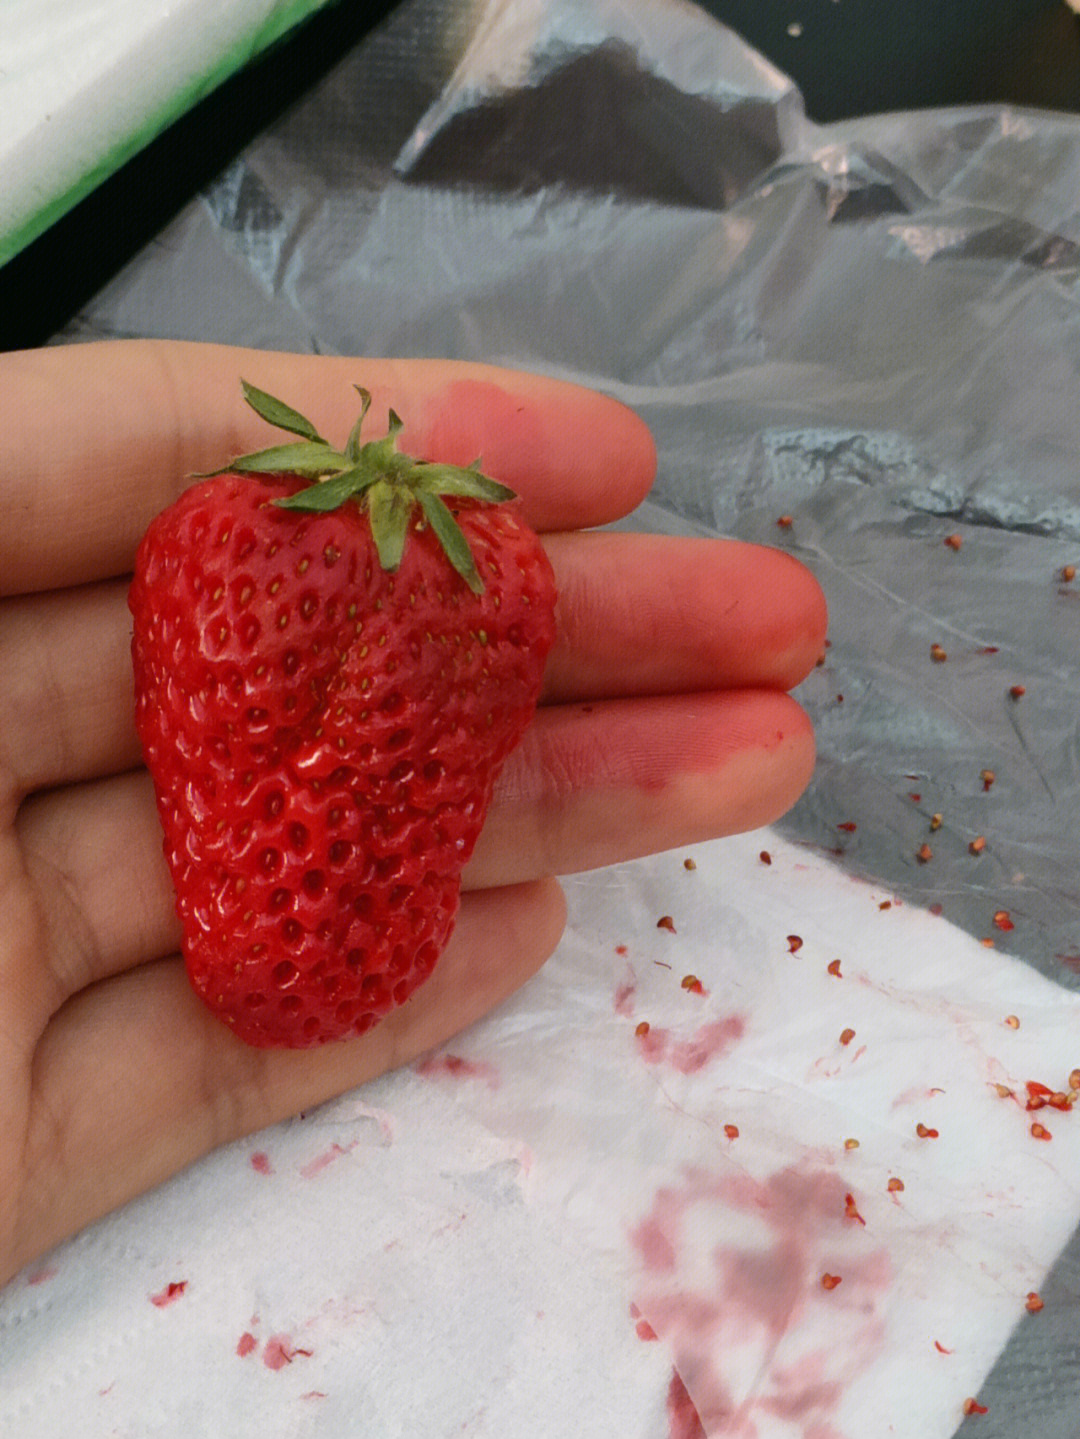 无草莓籽的草莓照片图片